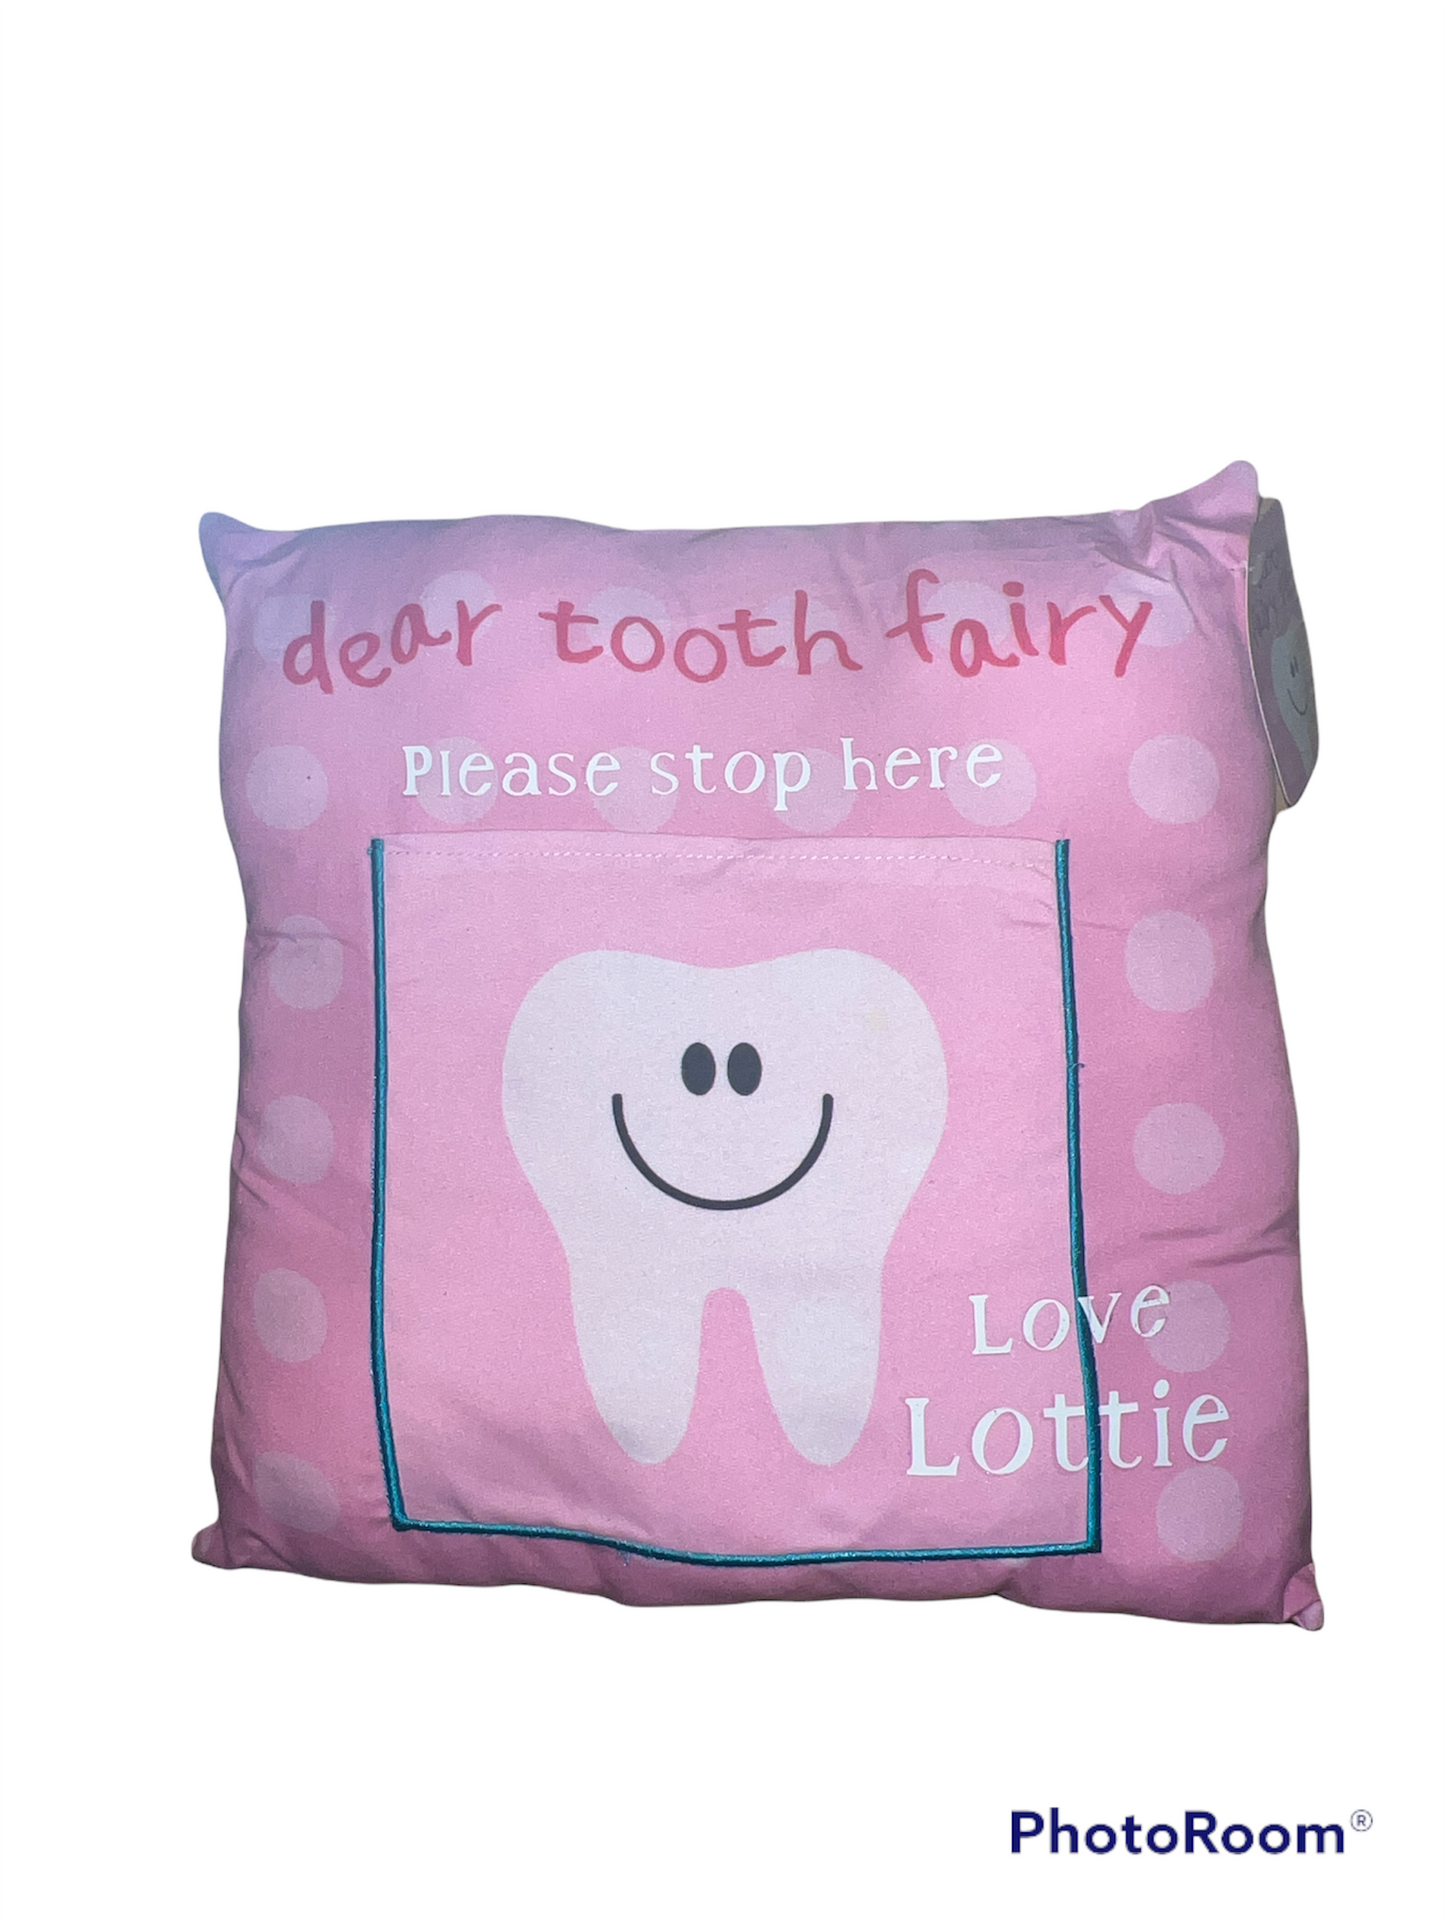 Tooth Fairy Cushion